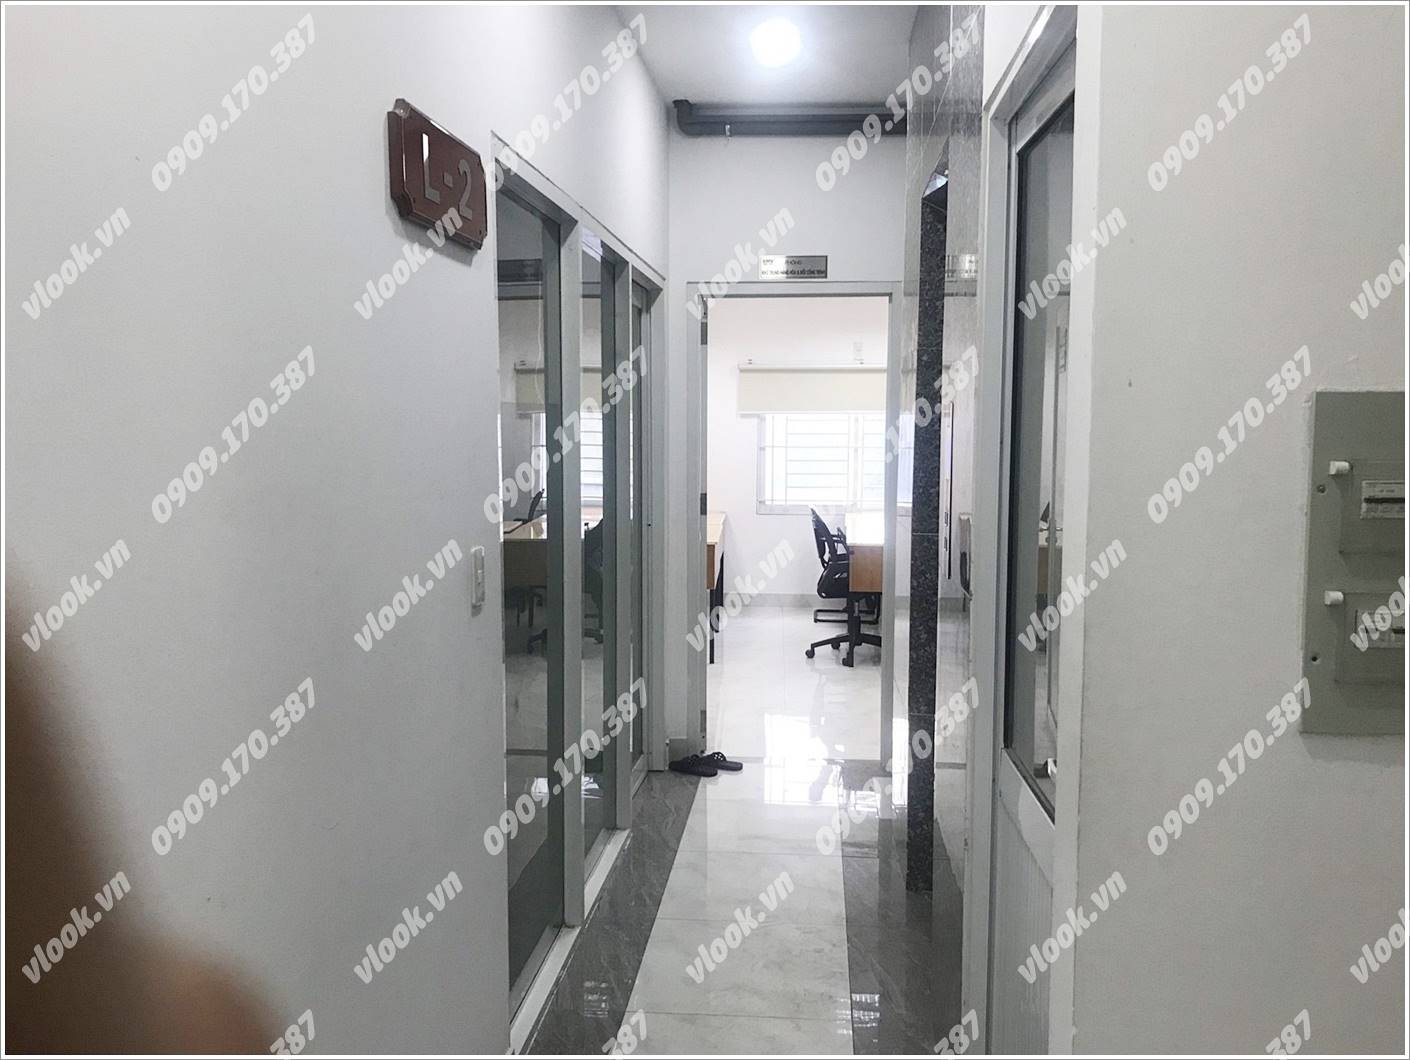 Cao ốc văn phòng cho thuê tòa nhà Đại Minh Việt Building, Đường số 546, Quận 9, Thành Phố Thủ Đức, TPHCM - vlook.vn